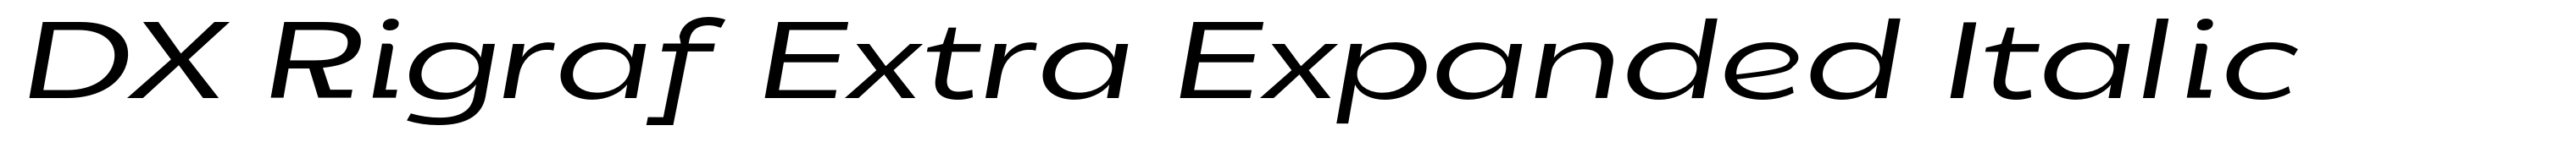 DX Rigraf Extra Expanded Italic